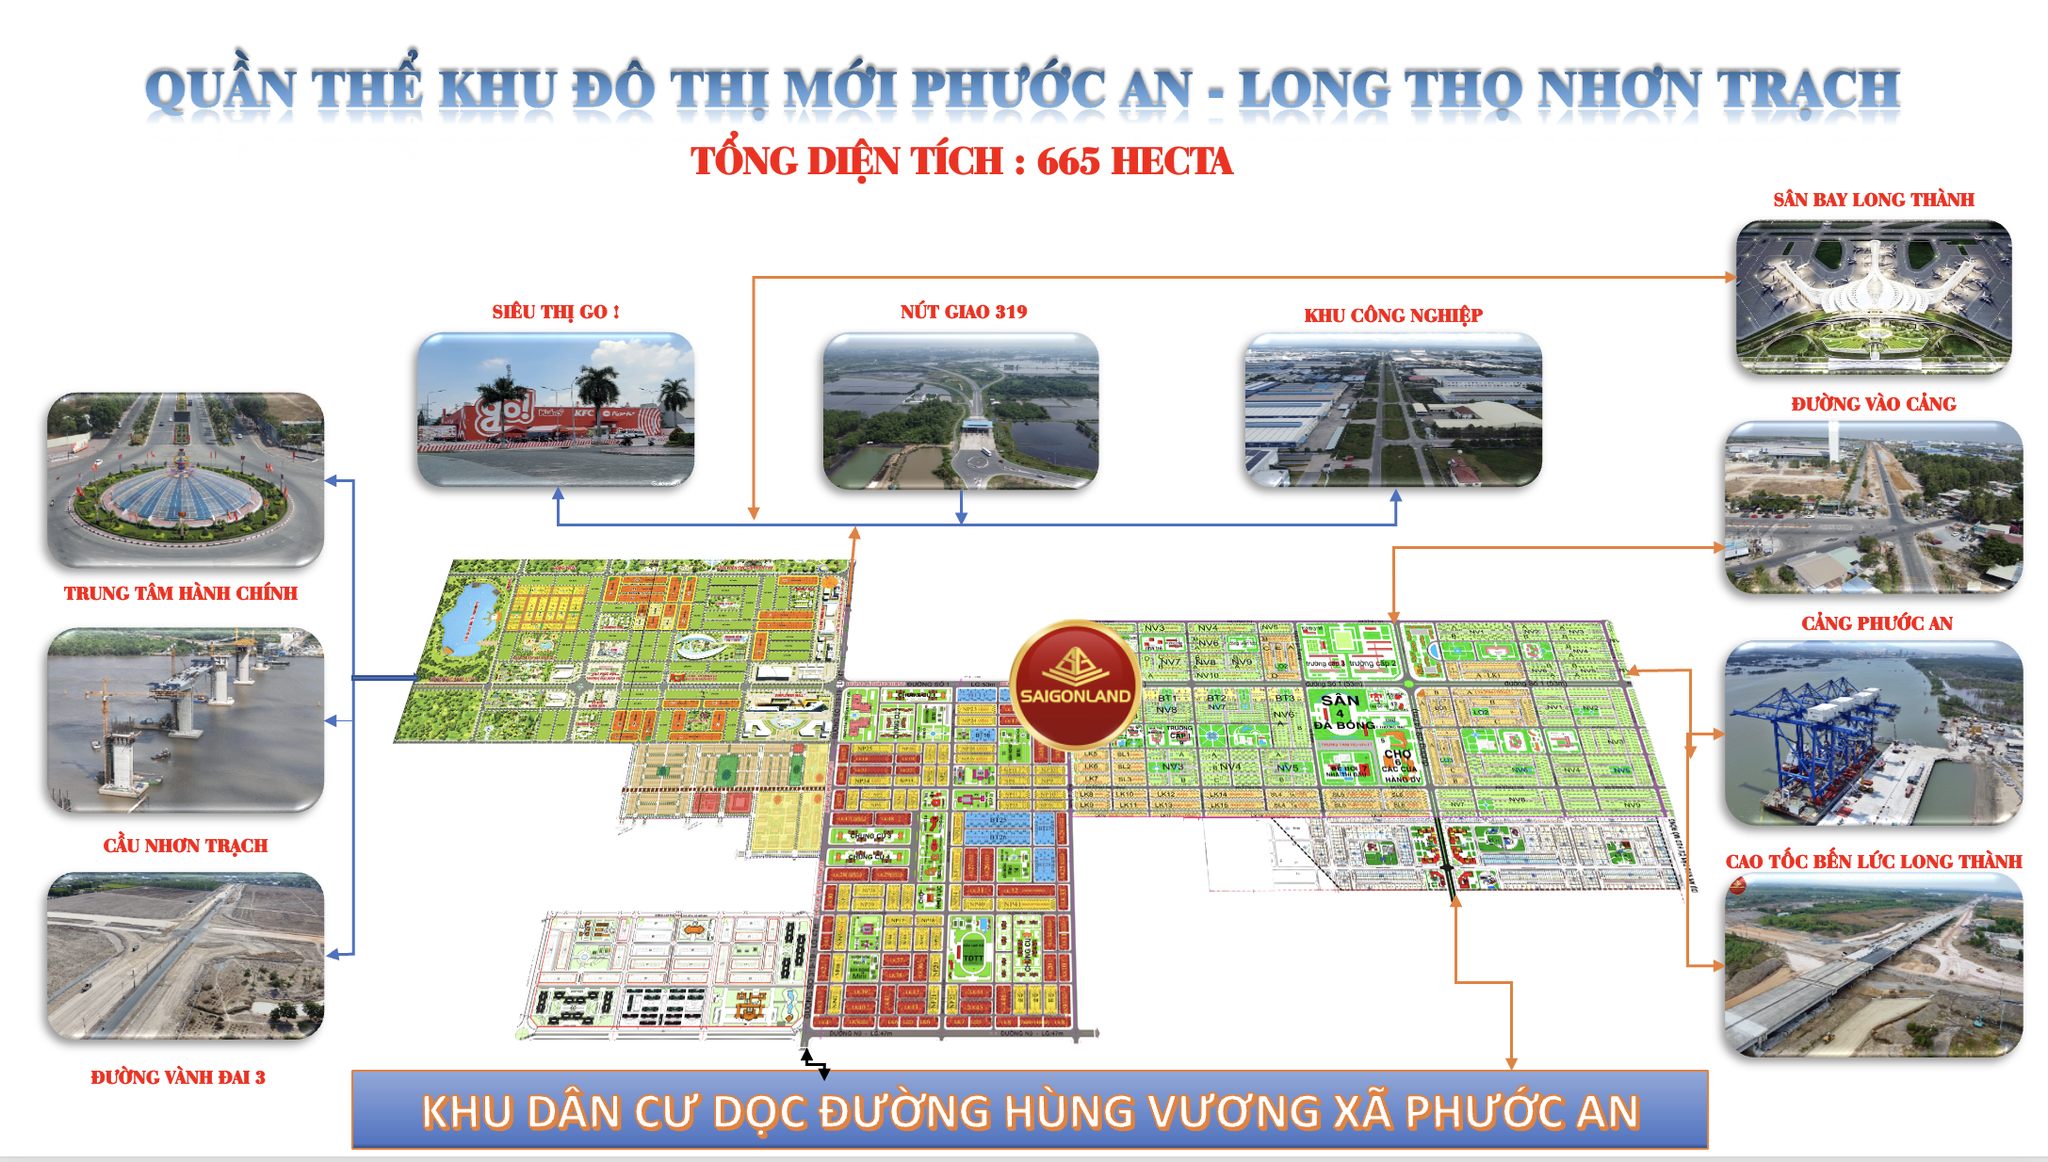 Saigonland Nhơn Trạch - Mua bán đất Dự án Hud Nhơn Trạch Đồng Nai và Khu đô thị mới Nhơn Trạch - Ảnh 1